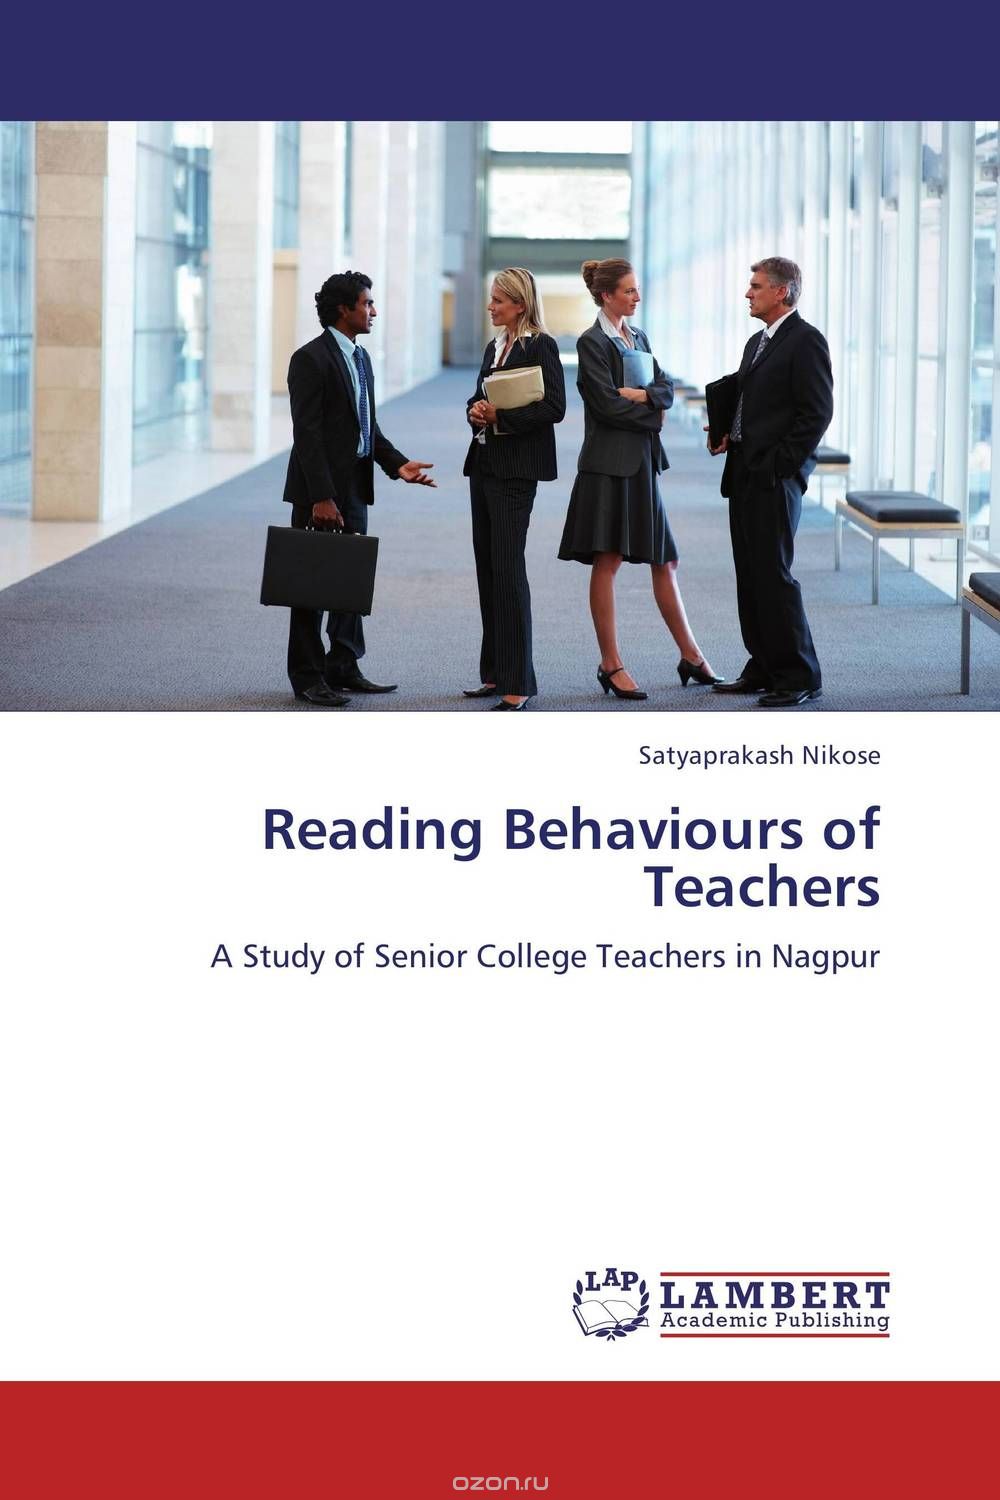 Скачать книгу "Reading Behaviours of Teachers"